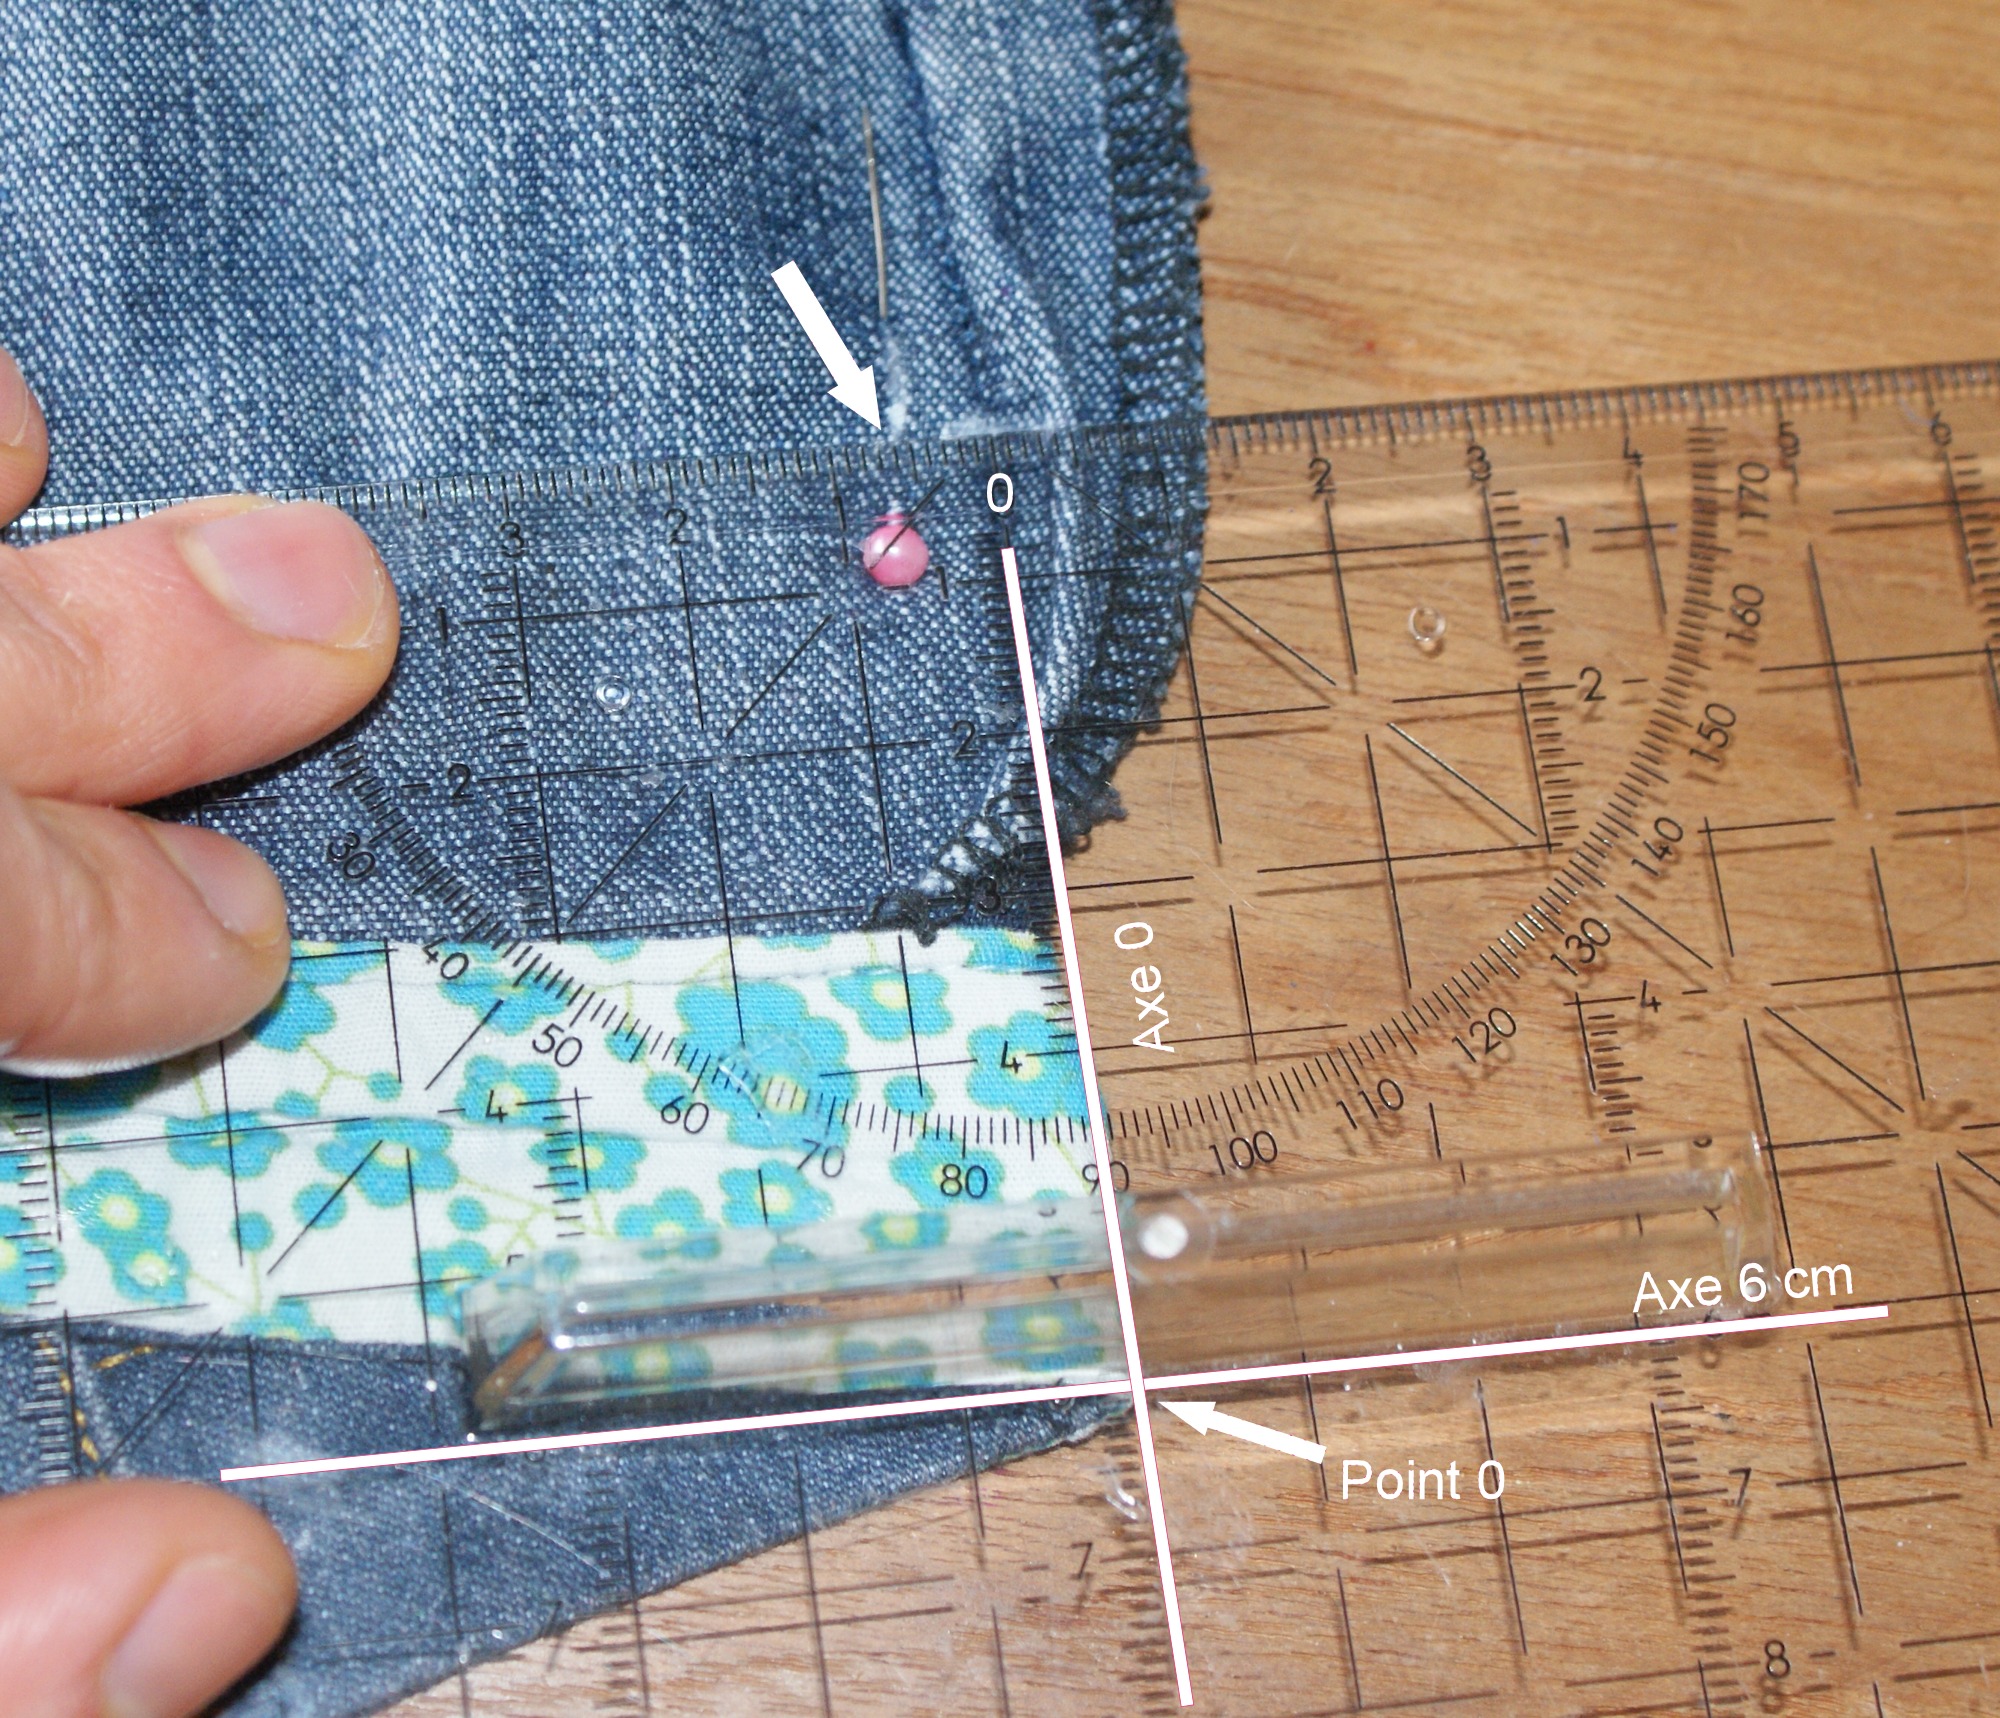 10 astuces pour raccourcir un pantalon sans machine à coudre